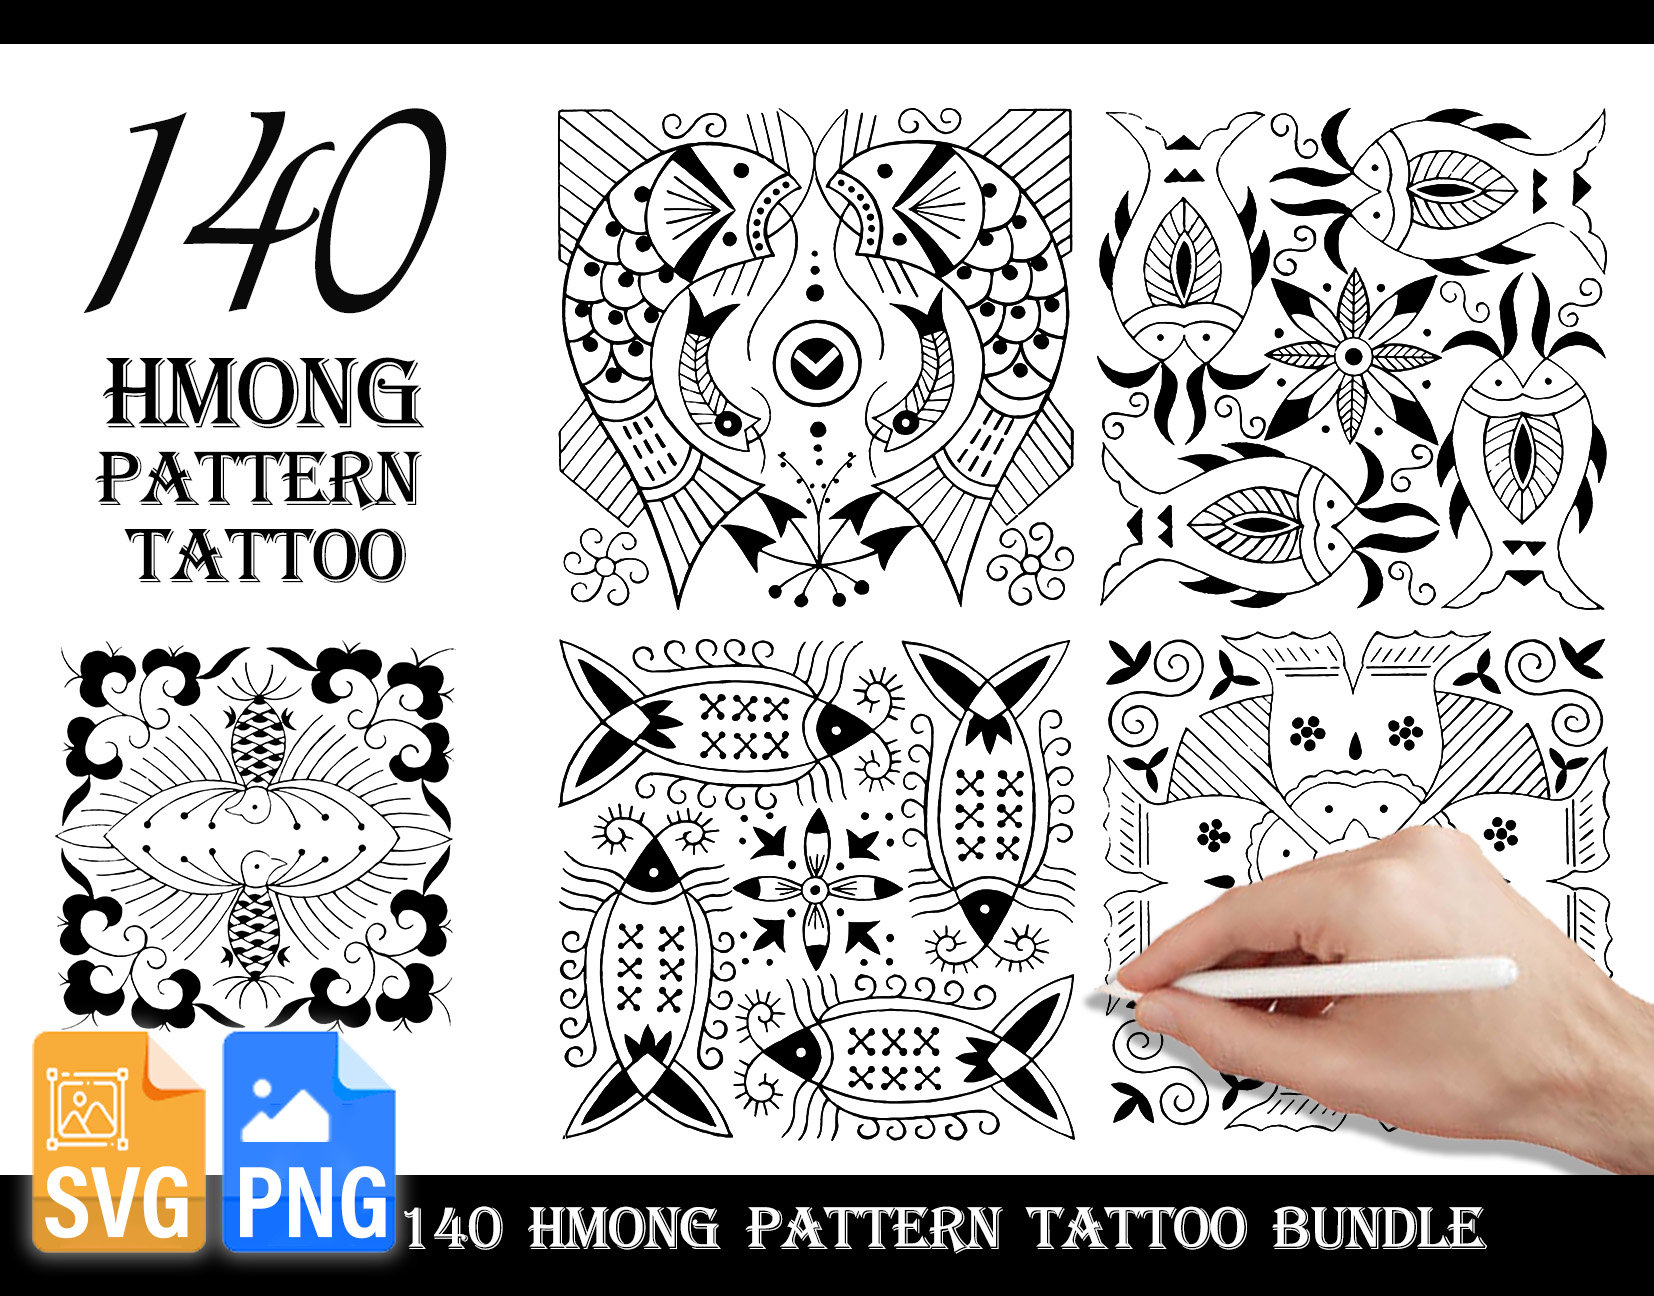 Minnesota Hmong Tattoo Artists  Facebook